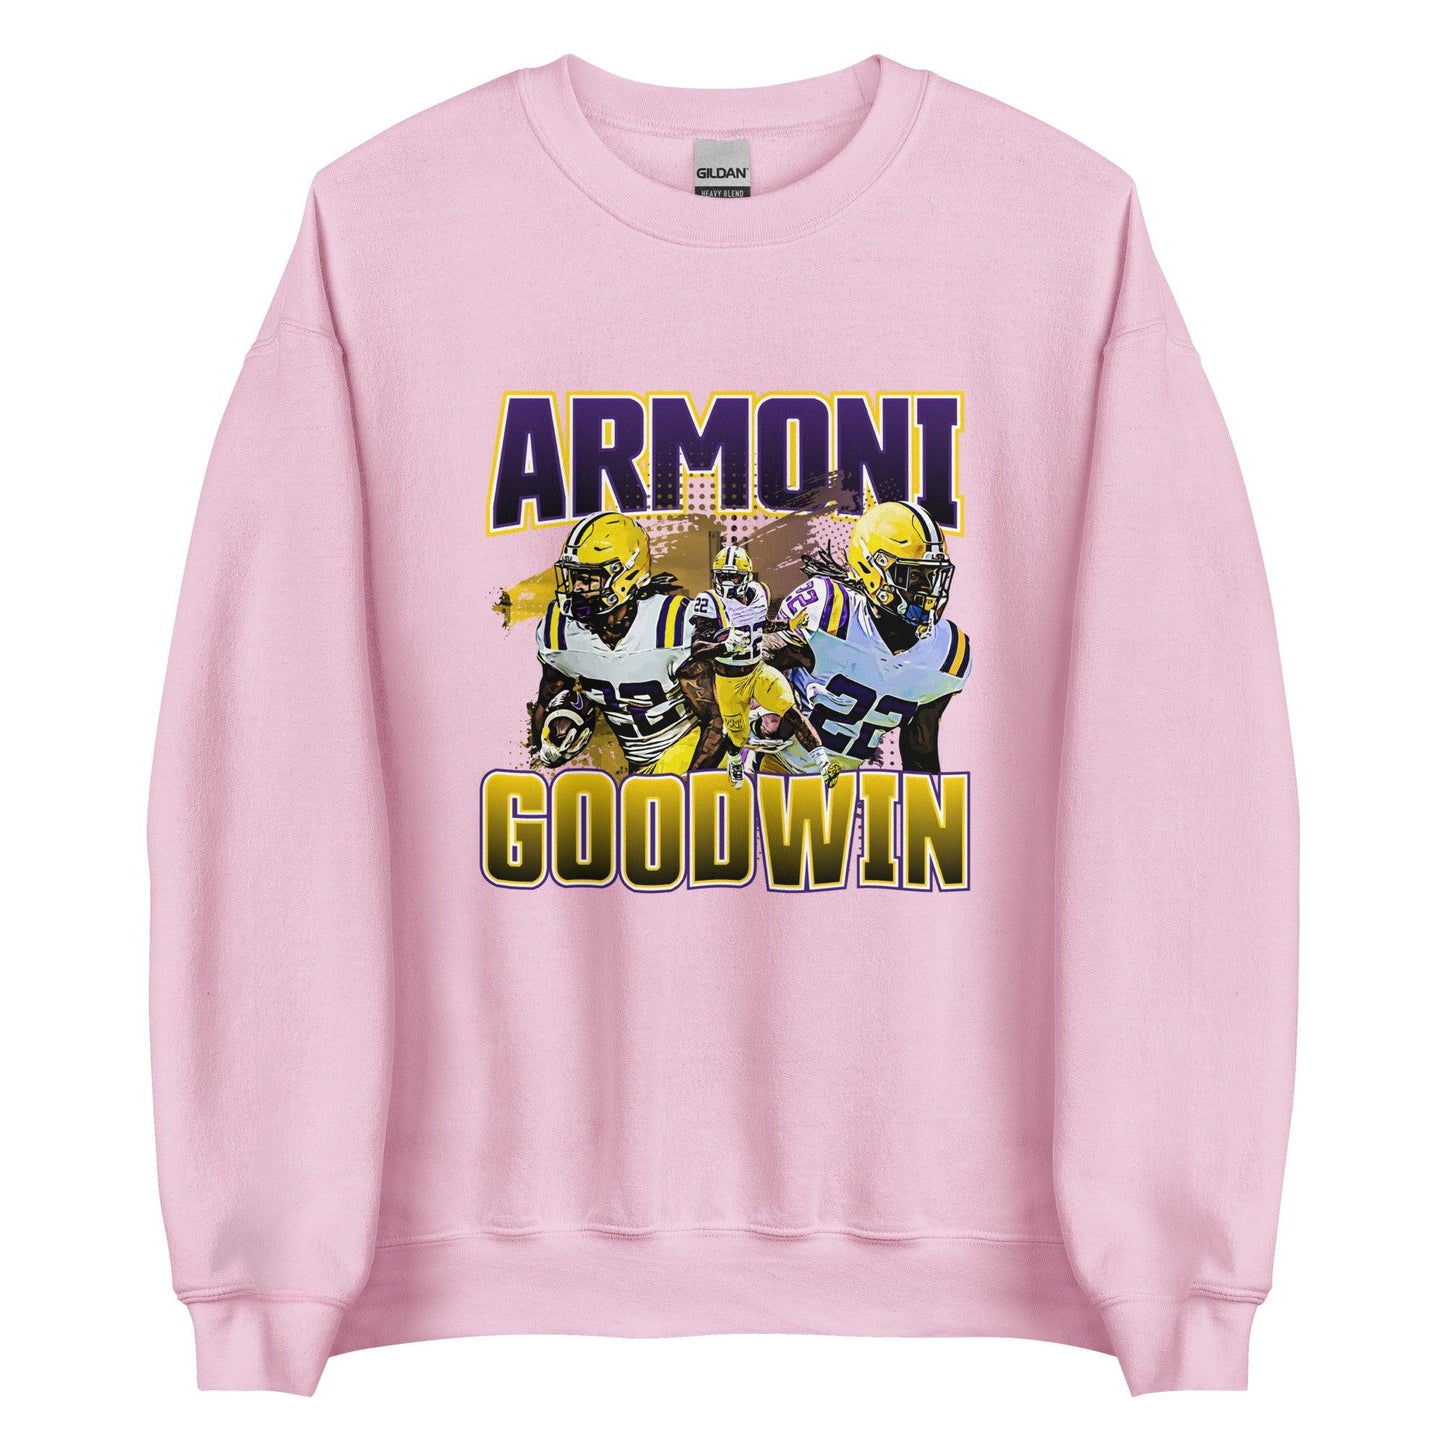 Armoni Goodwin "Vintage" Sweatshirt - Fan Arch